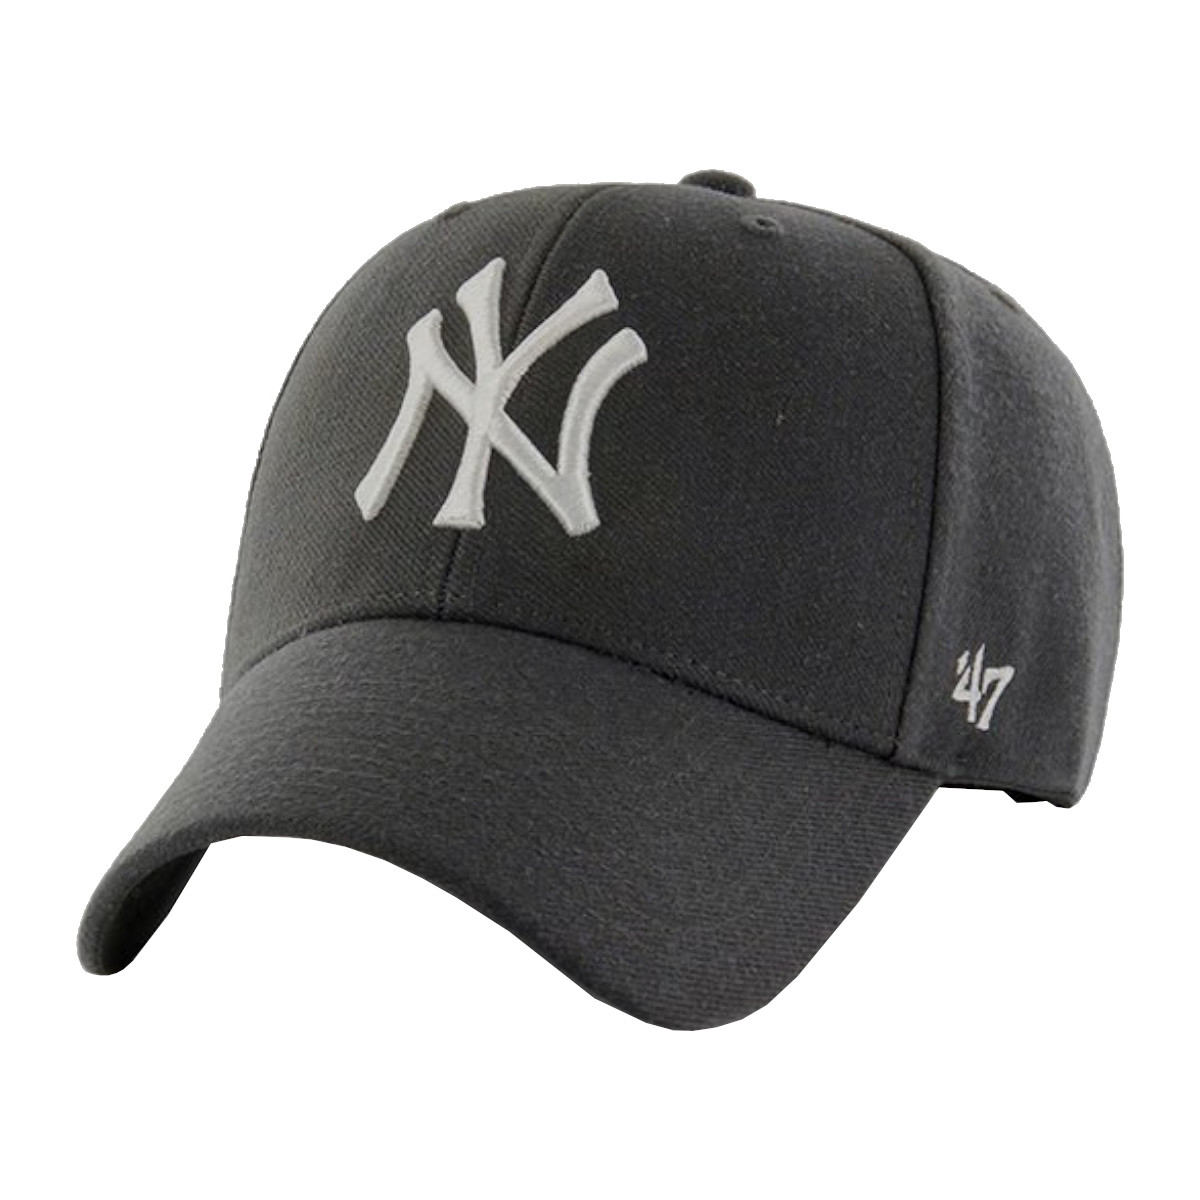 Asusteet / tarvikkeet Lippalakit '47 Brand New York Yankees MVP Cap Harmaa